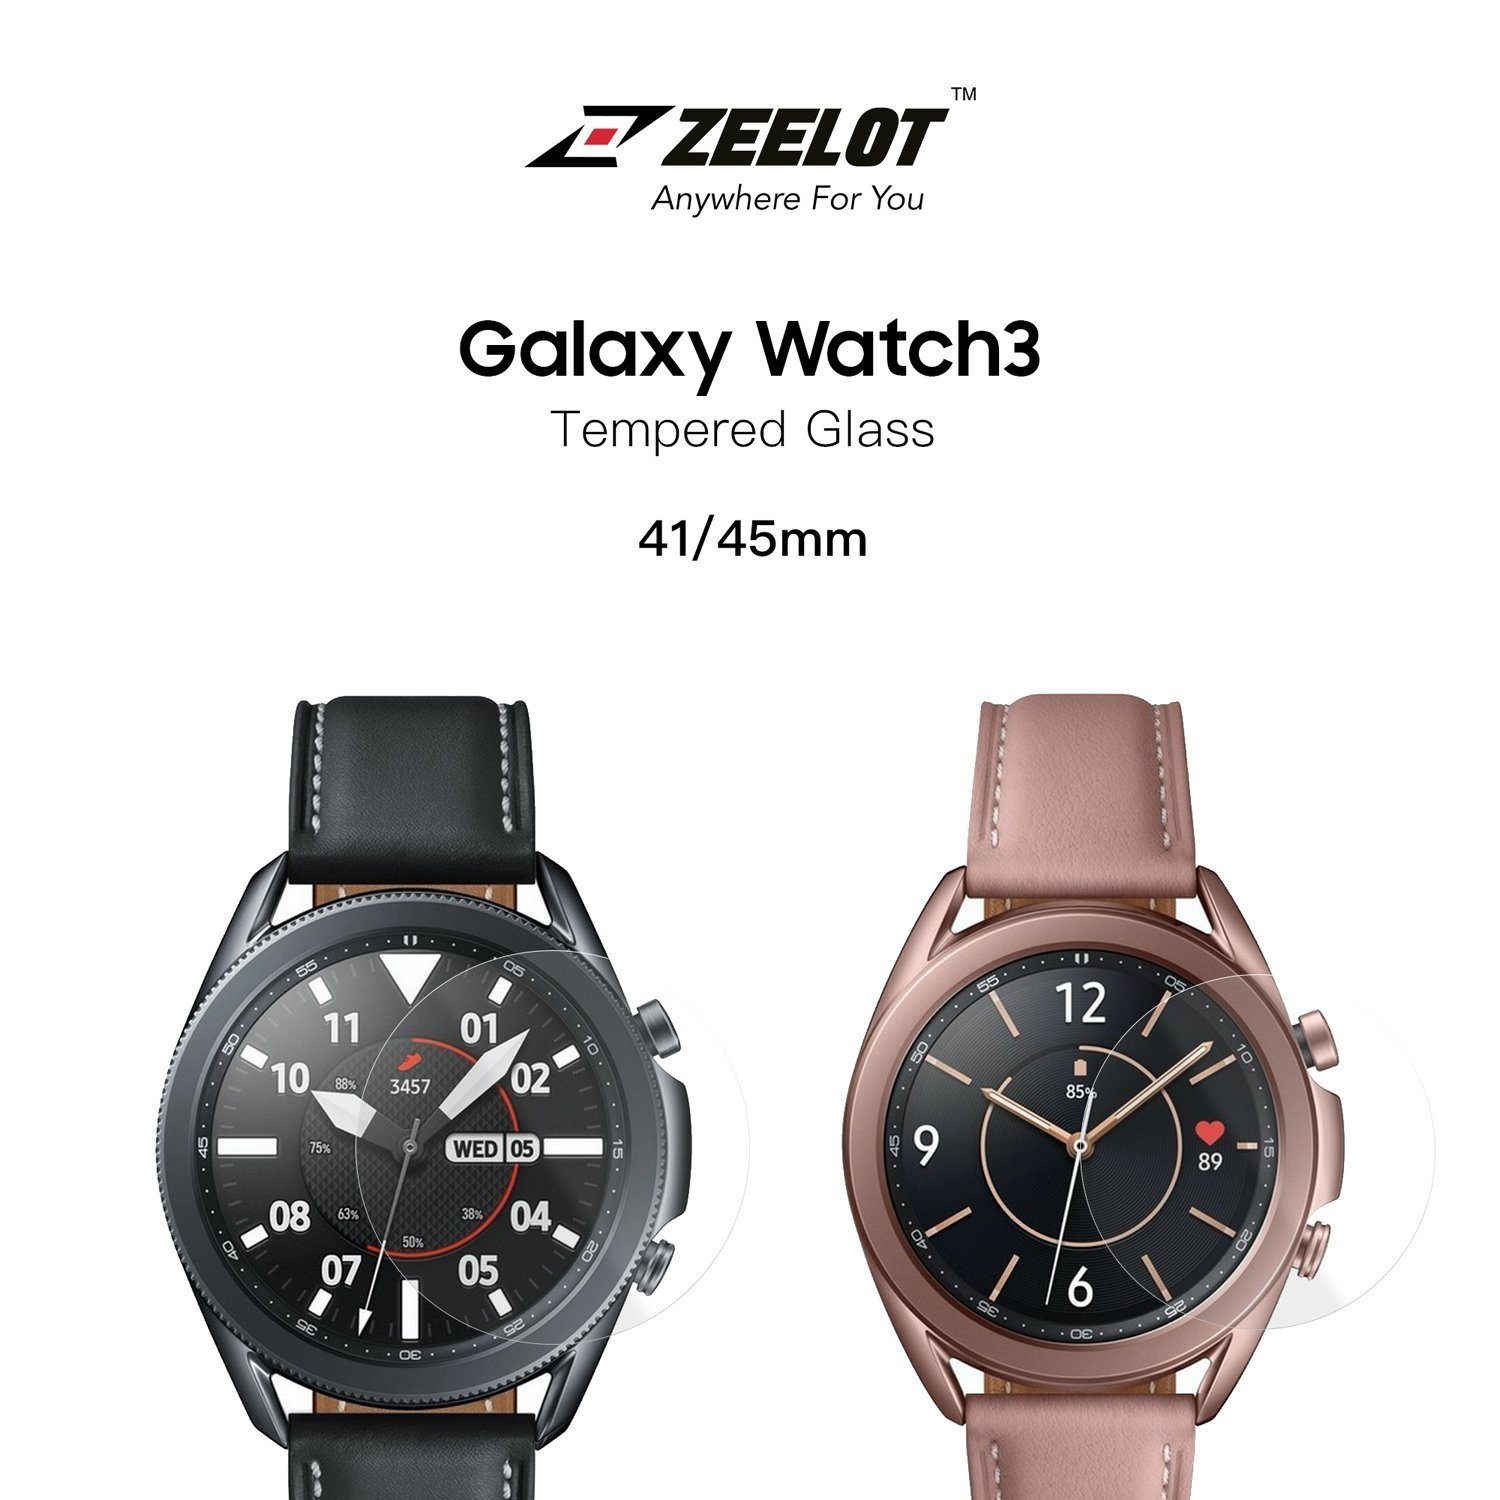 ZEELOT PureShield 2.5D Tempered Glass Screen Protector for Samsung Galaxy Watch 3 41mm (2Pcs), Clear Default ZEELOT 